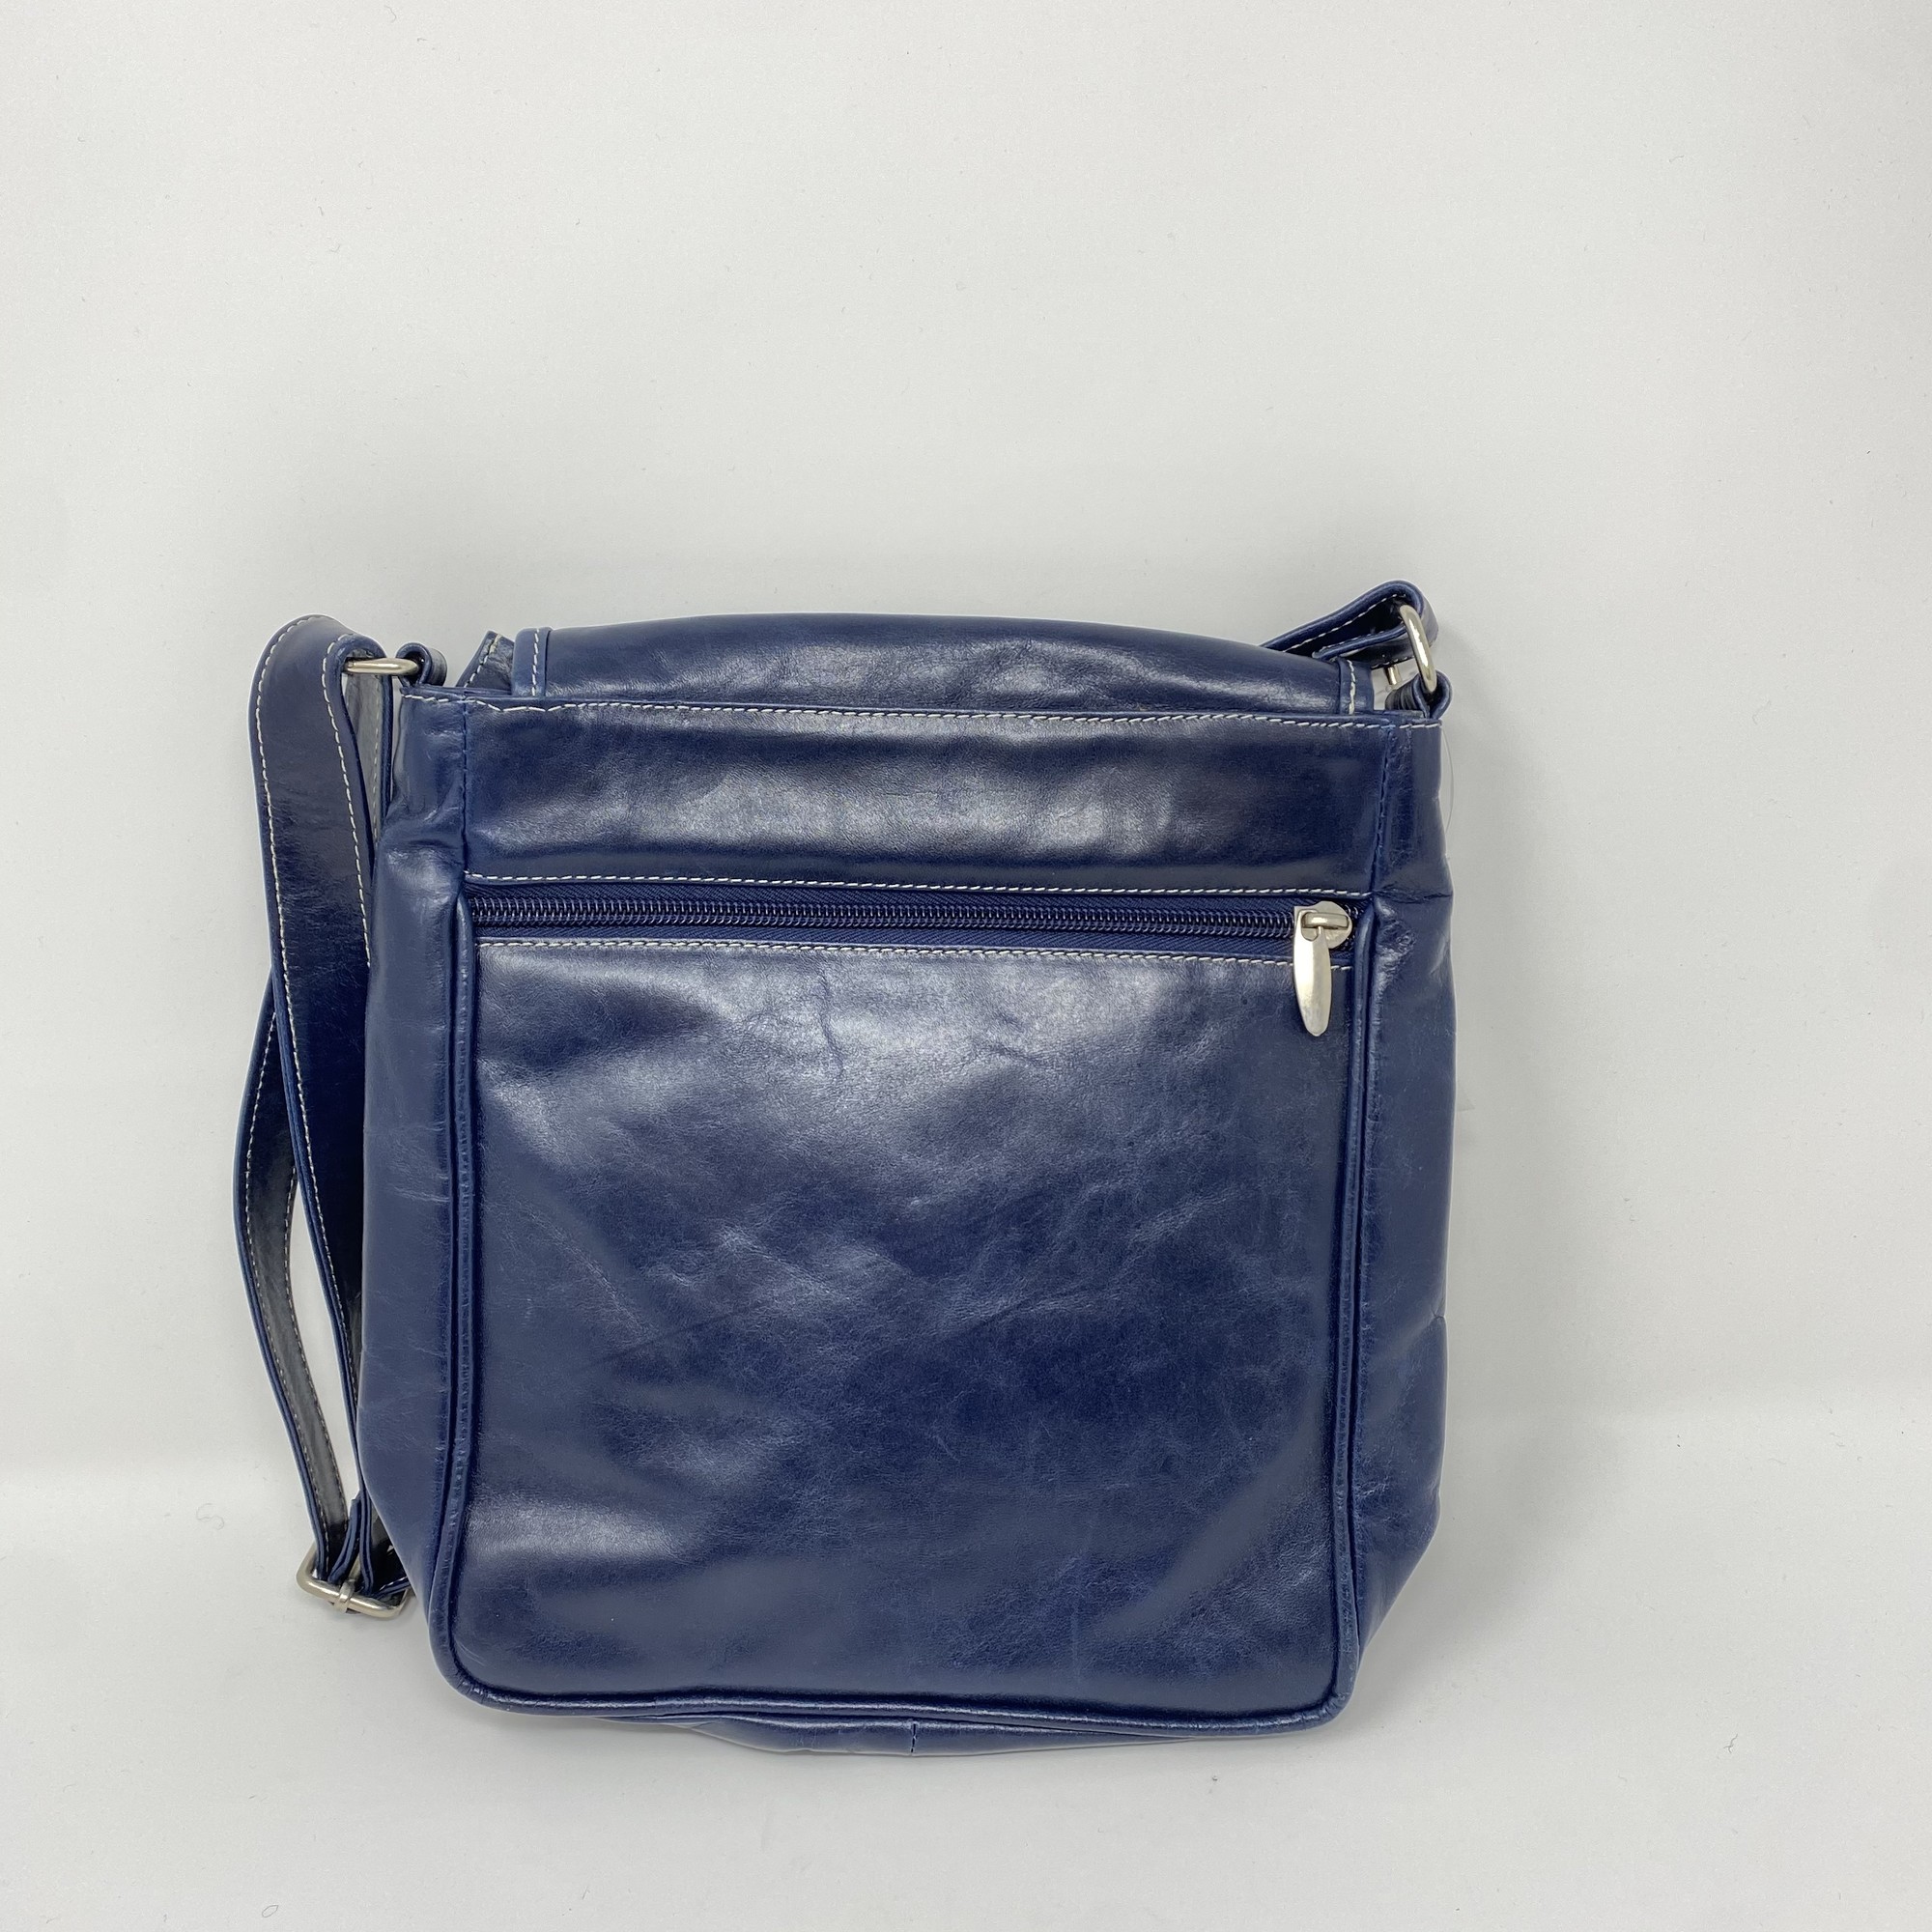 IMPULSE Rucksack bag travel bag for men tourist bag backpack for hiking  trekking camping Rucksack - 60 L Blue - Price in India | Flipkart.com